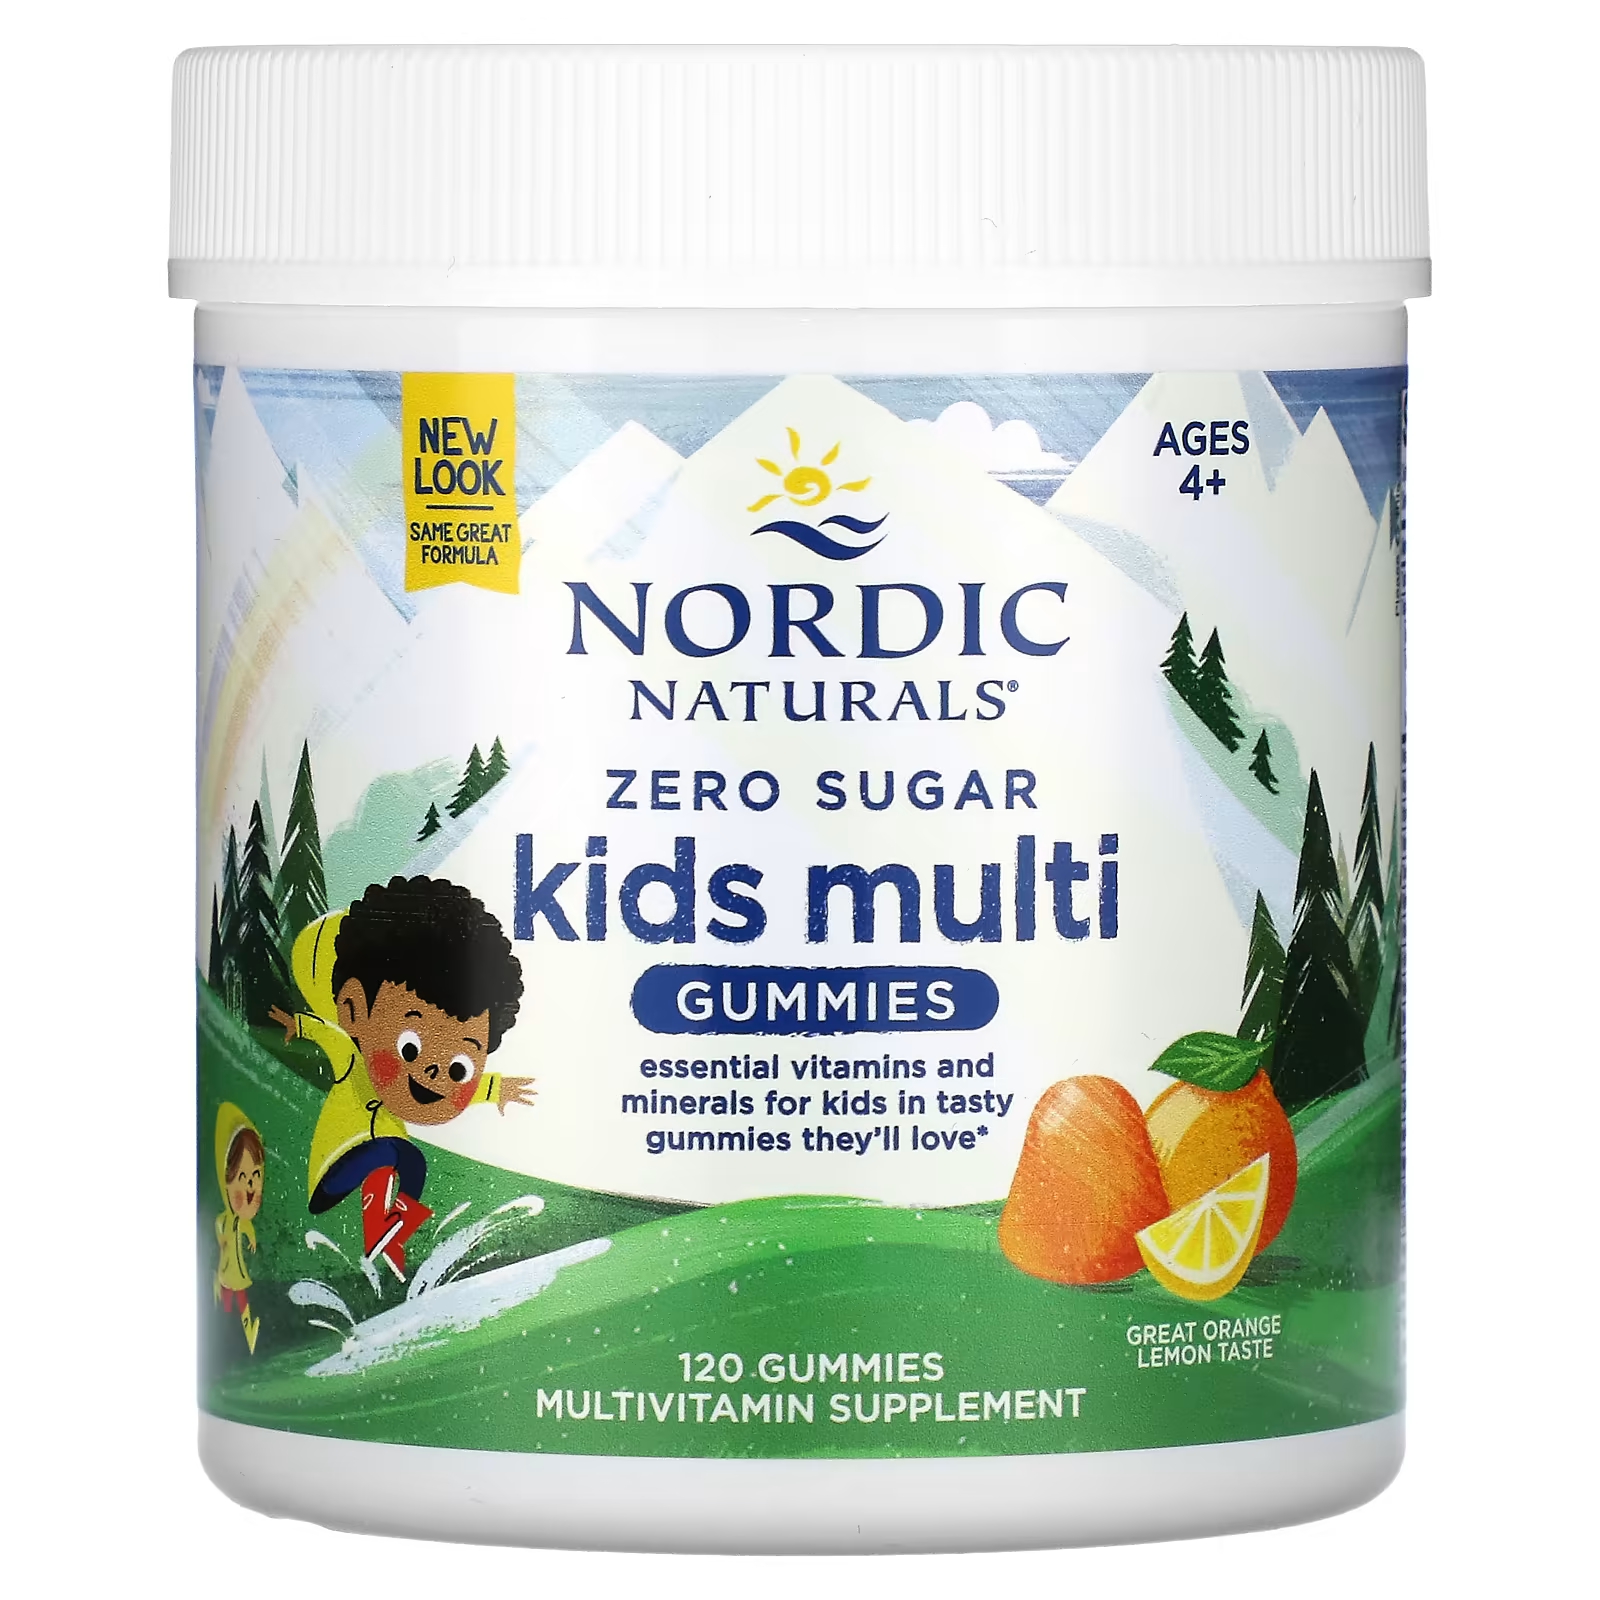 Мультивитаминная добавка для детей Nordic Naturals Zero Sugar Kids апельсин-лимон, 120 жевательных конфет flintstones gummies мультивитаминная добавка для детей 150 жевательных конфет